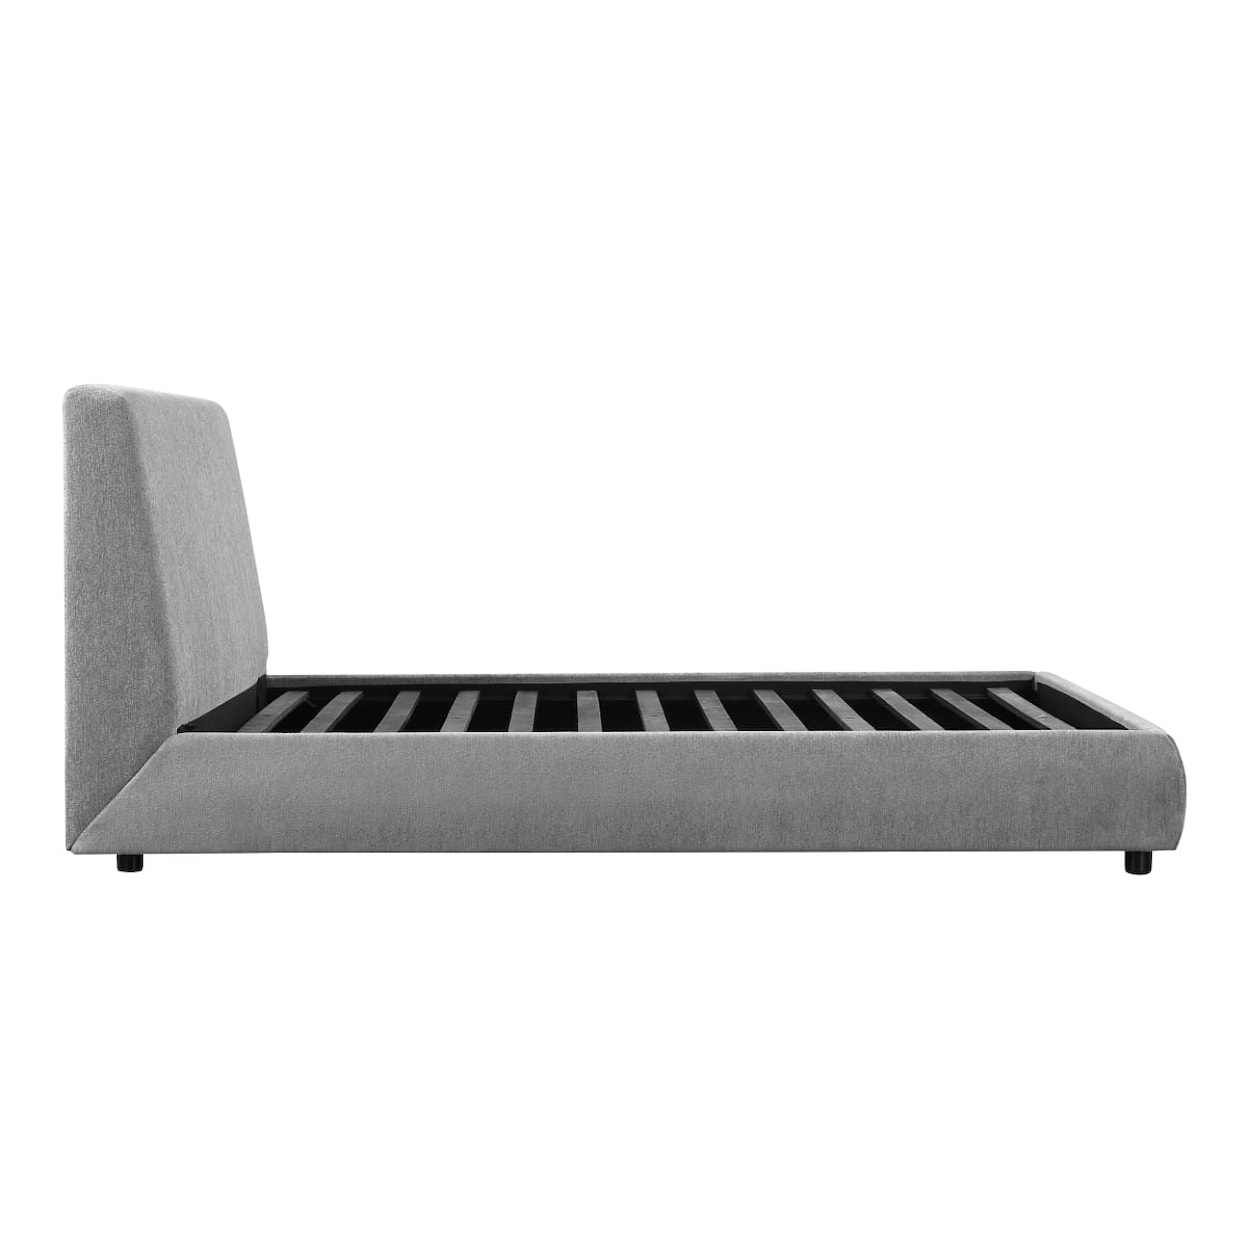 Homelegance Furniture Alford Queen Platform Bed